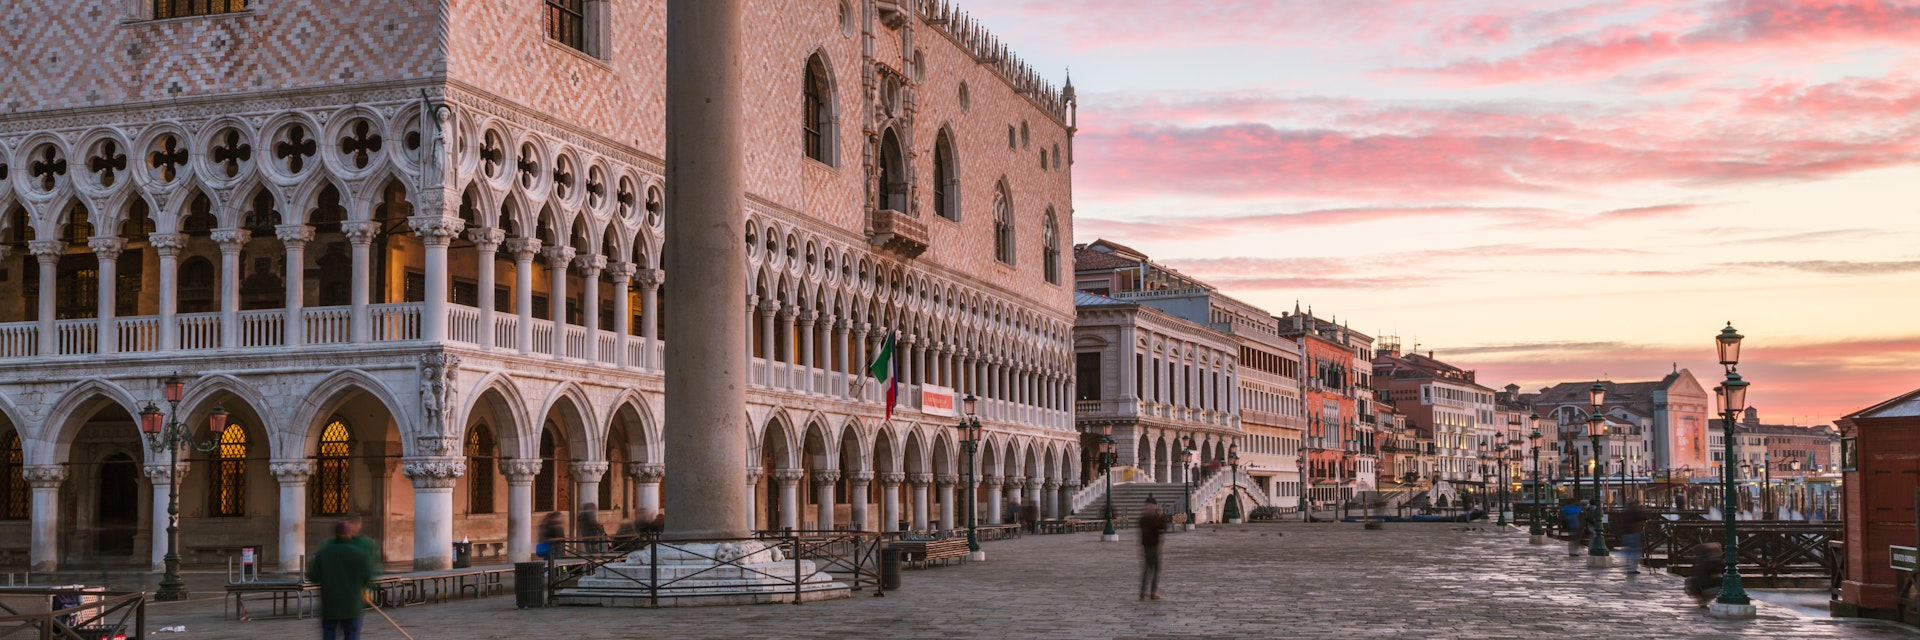 Awesome sunrise over Doges palace, Venice